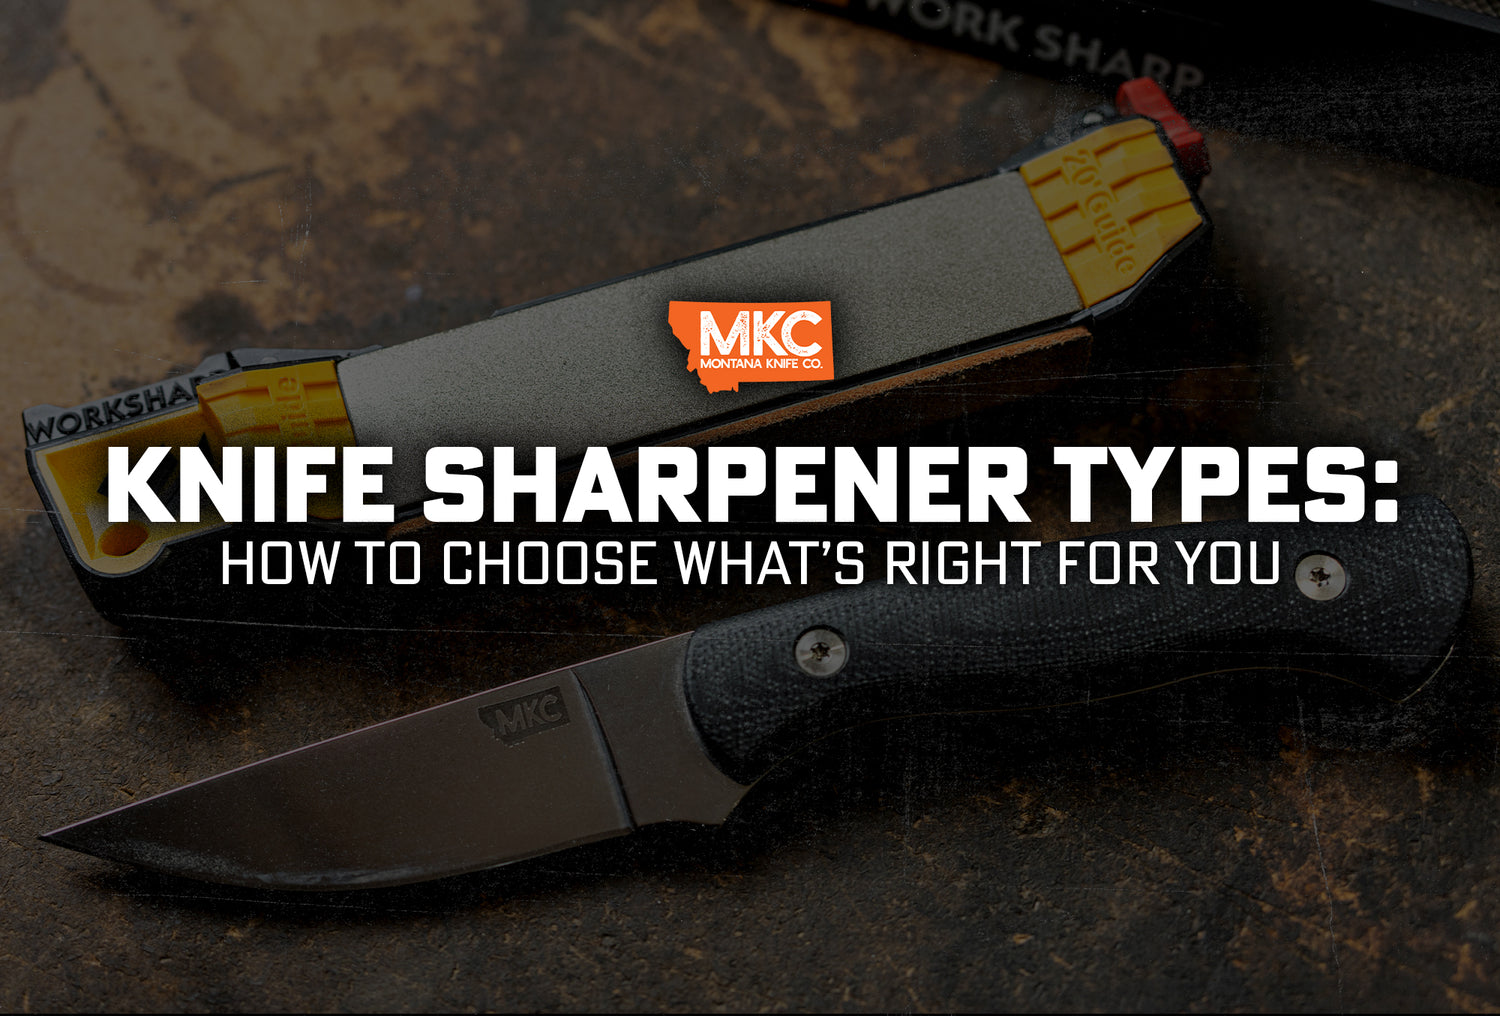 BLADE Knife Sharpener Buyer's Guide